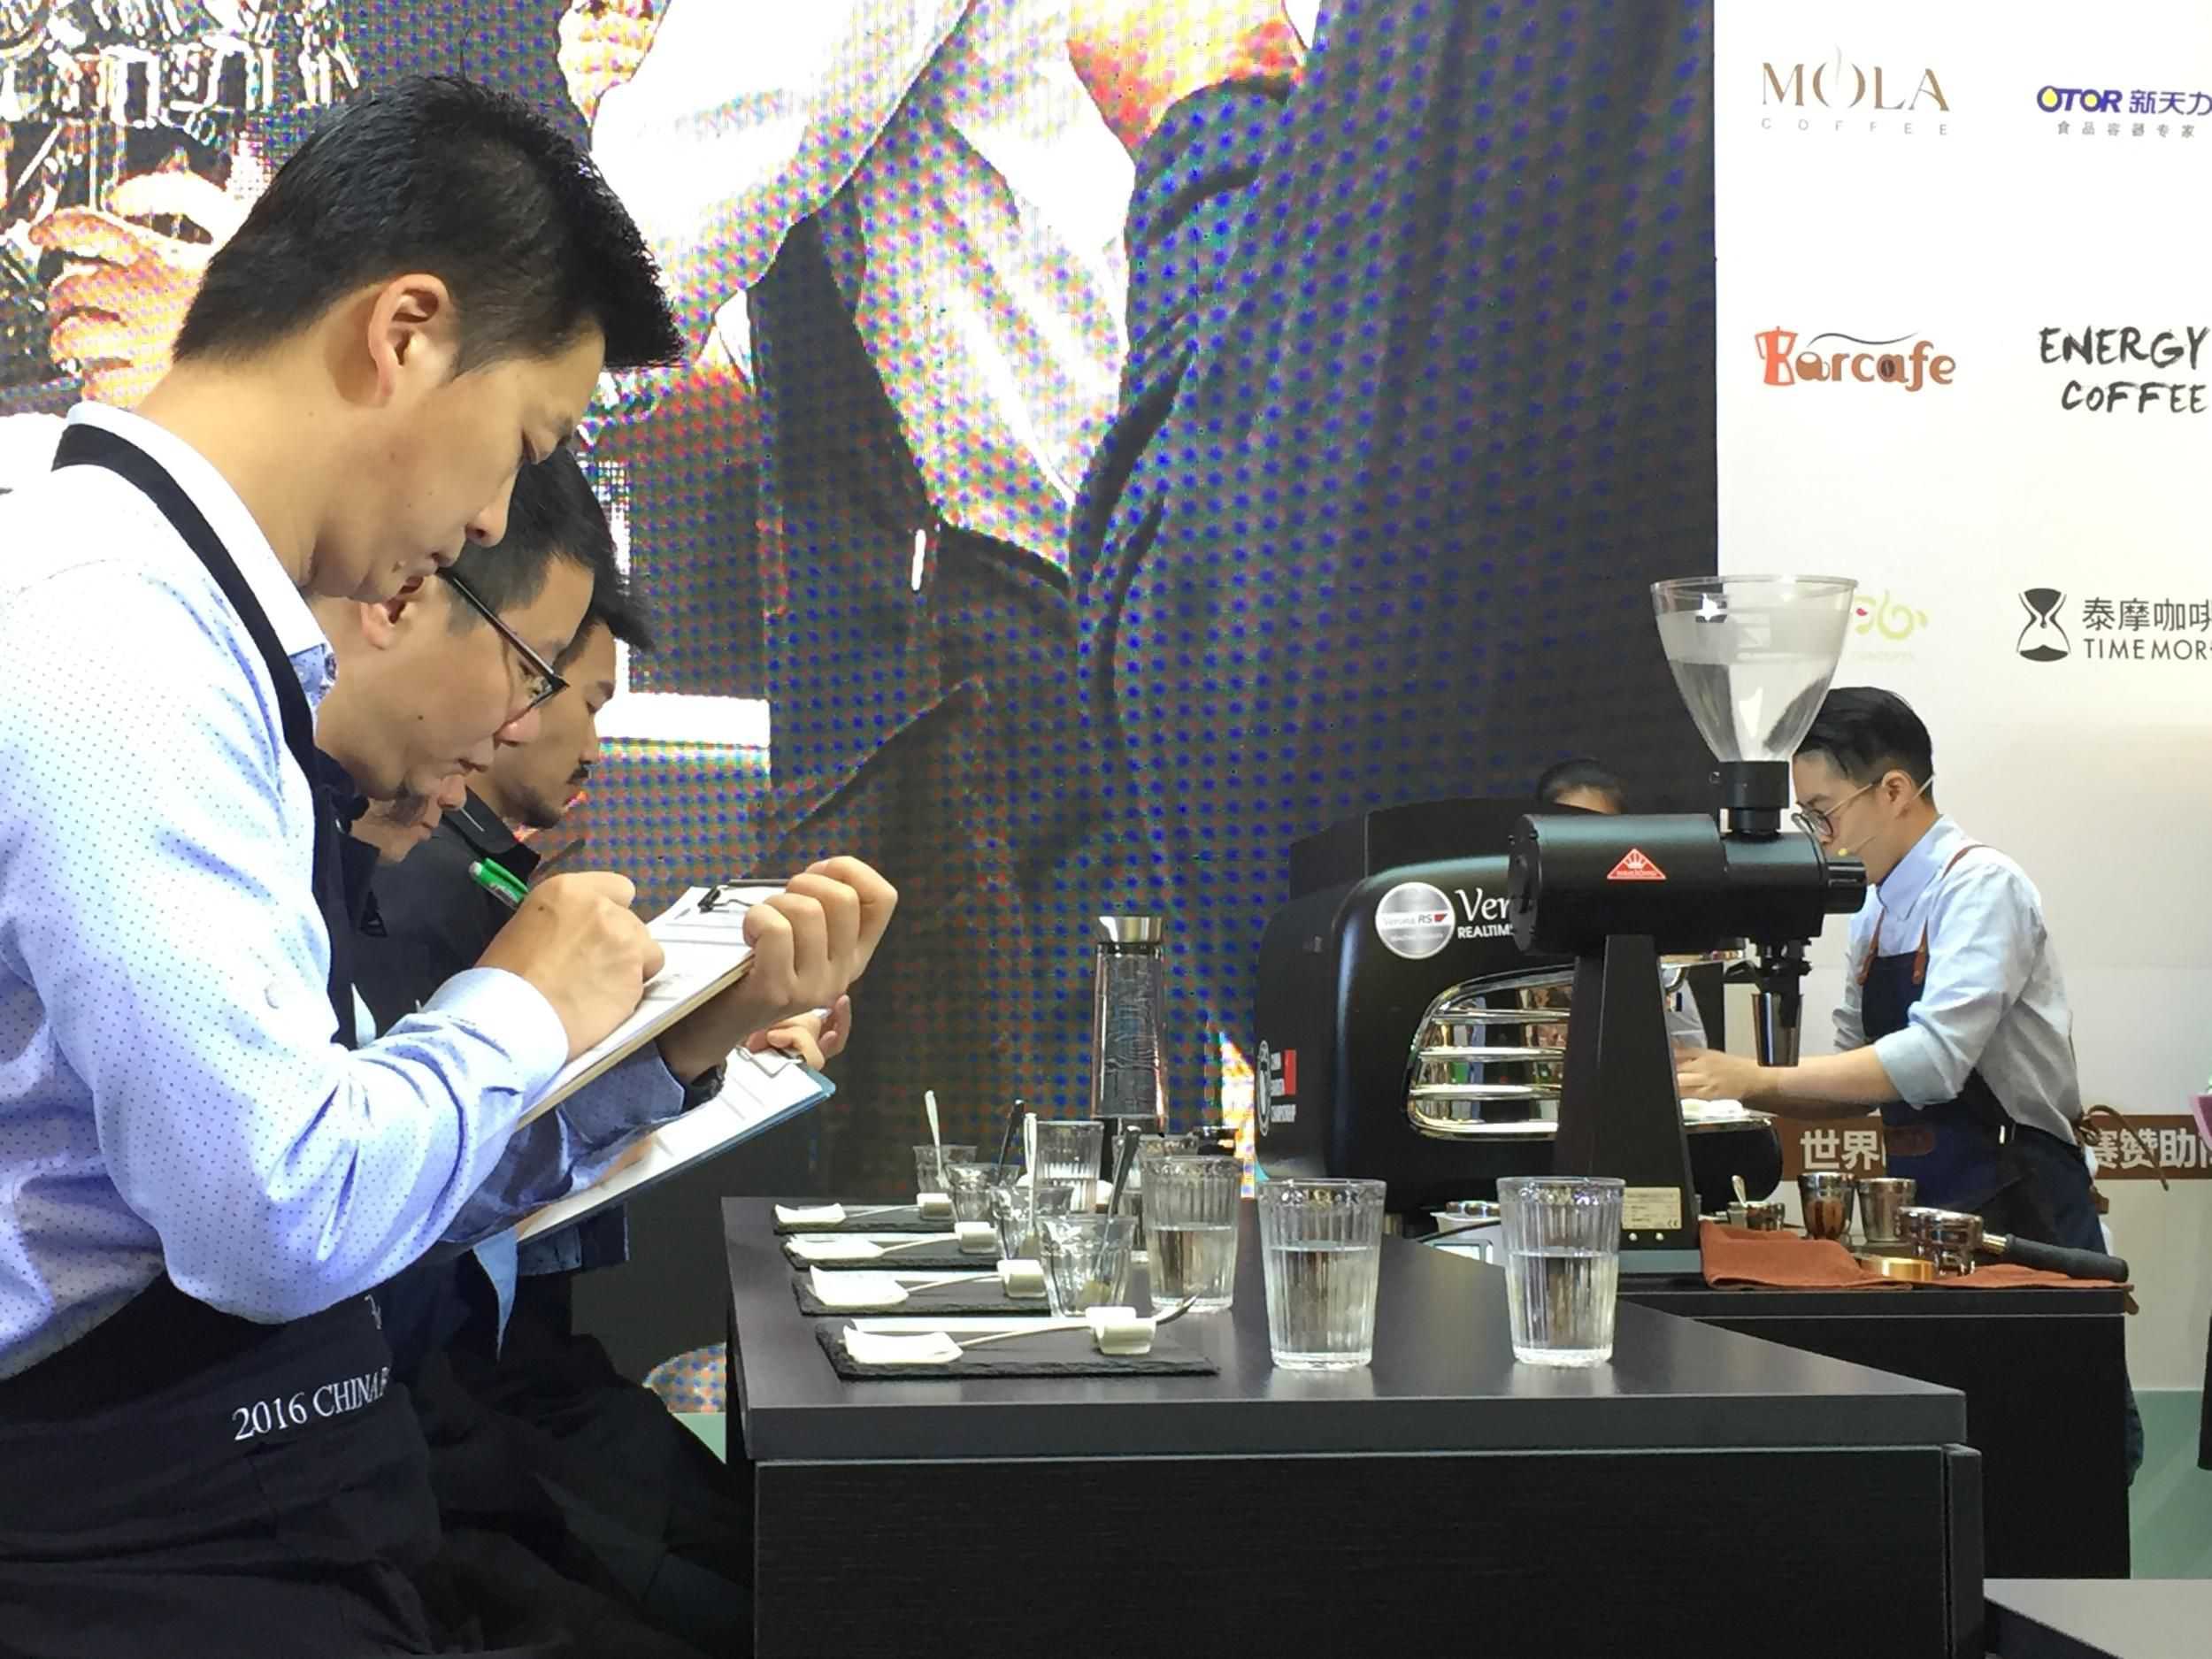 参赛选手向评委们展示自己的咖啡